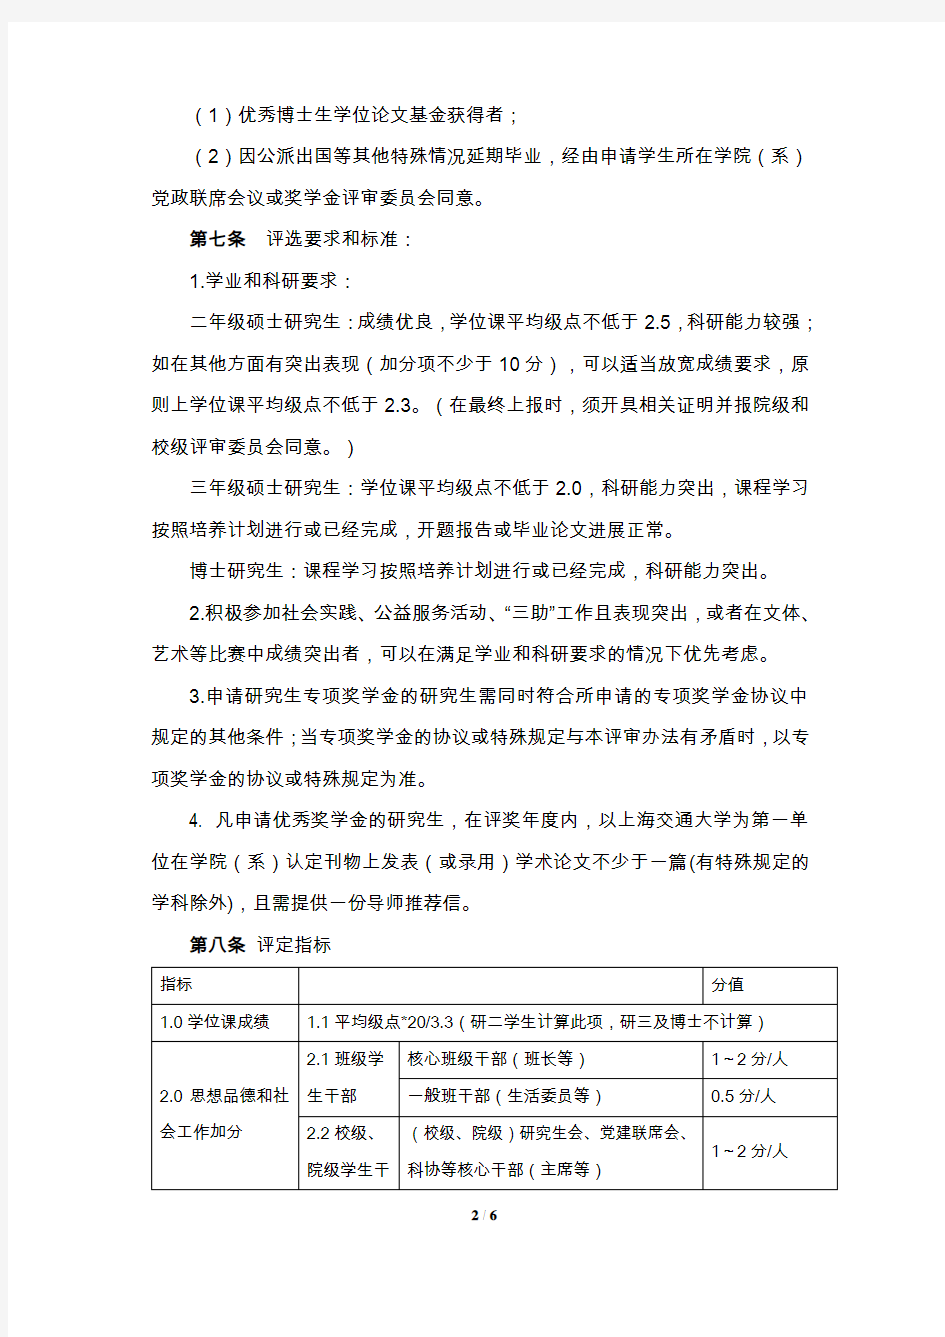 上海交通大学电院研究生专项奖学金优秀奖学金评选办法